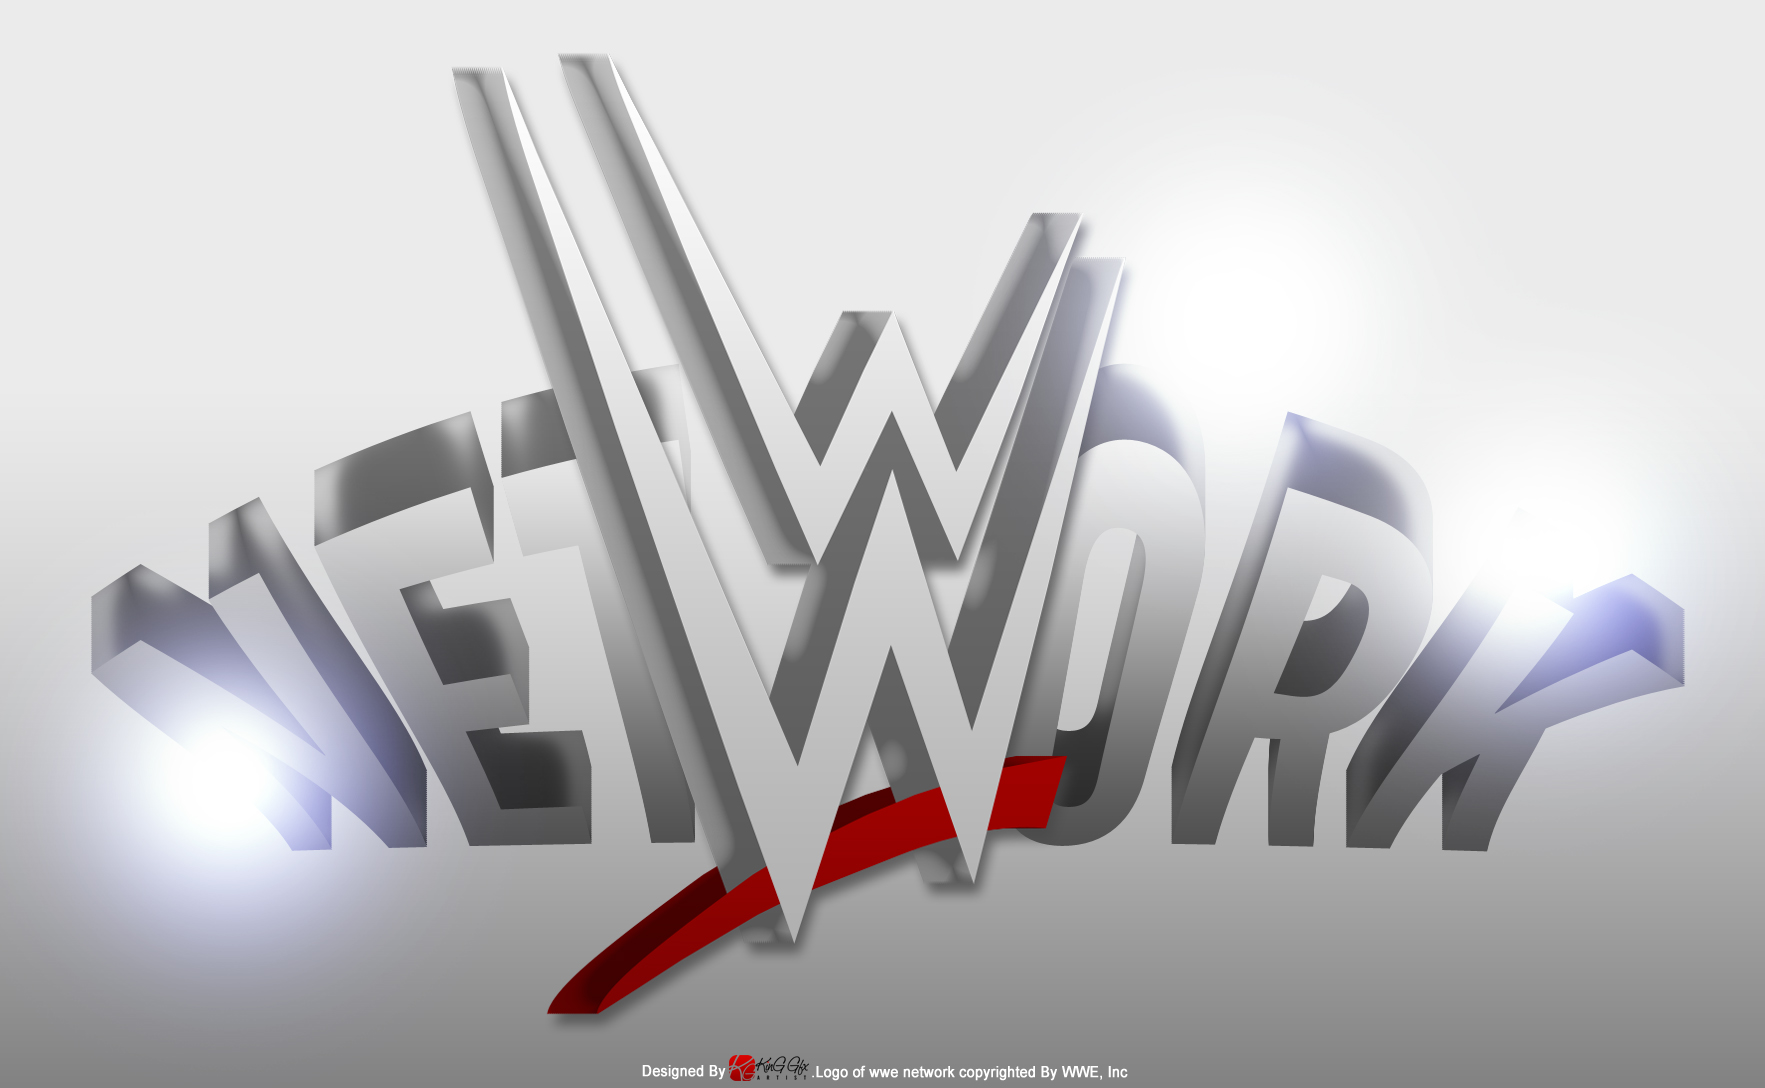 50 WWE Network Wallpaper on WallpaperSafari. wallpapersafari.com. 